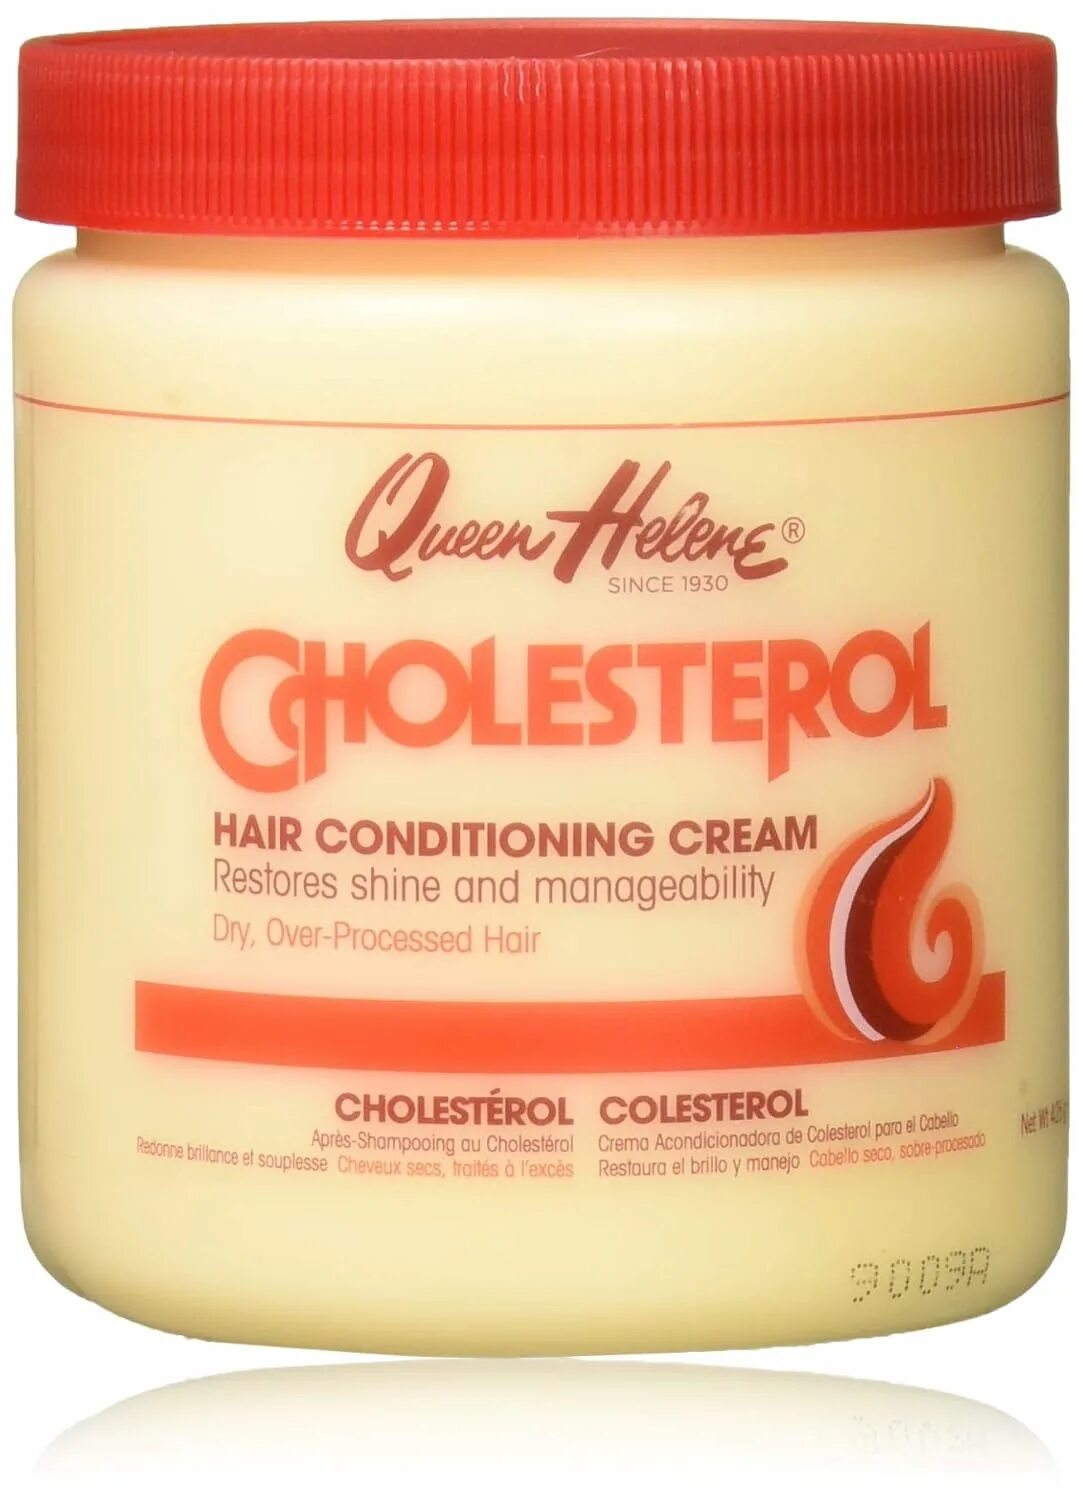 Кондиционер для волос cholesterol hair Conditioner. Queen Элен. Крем кондиционер для волос